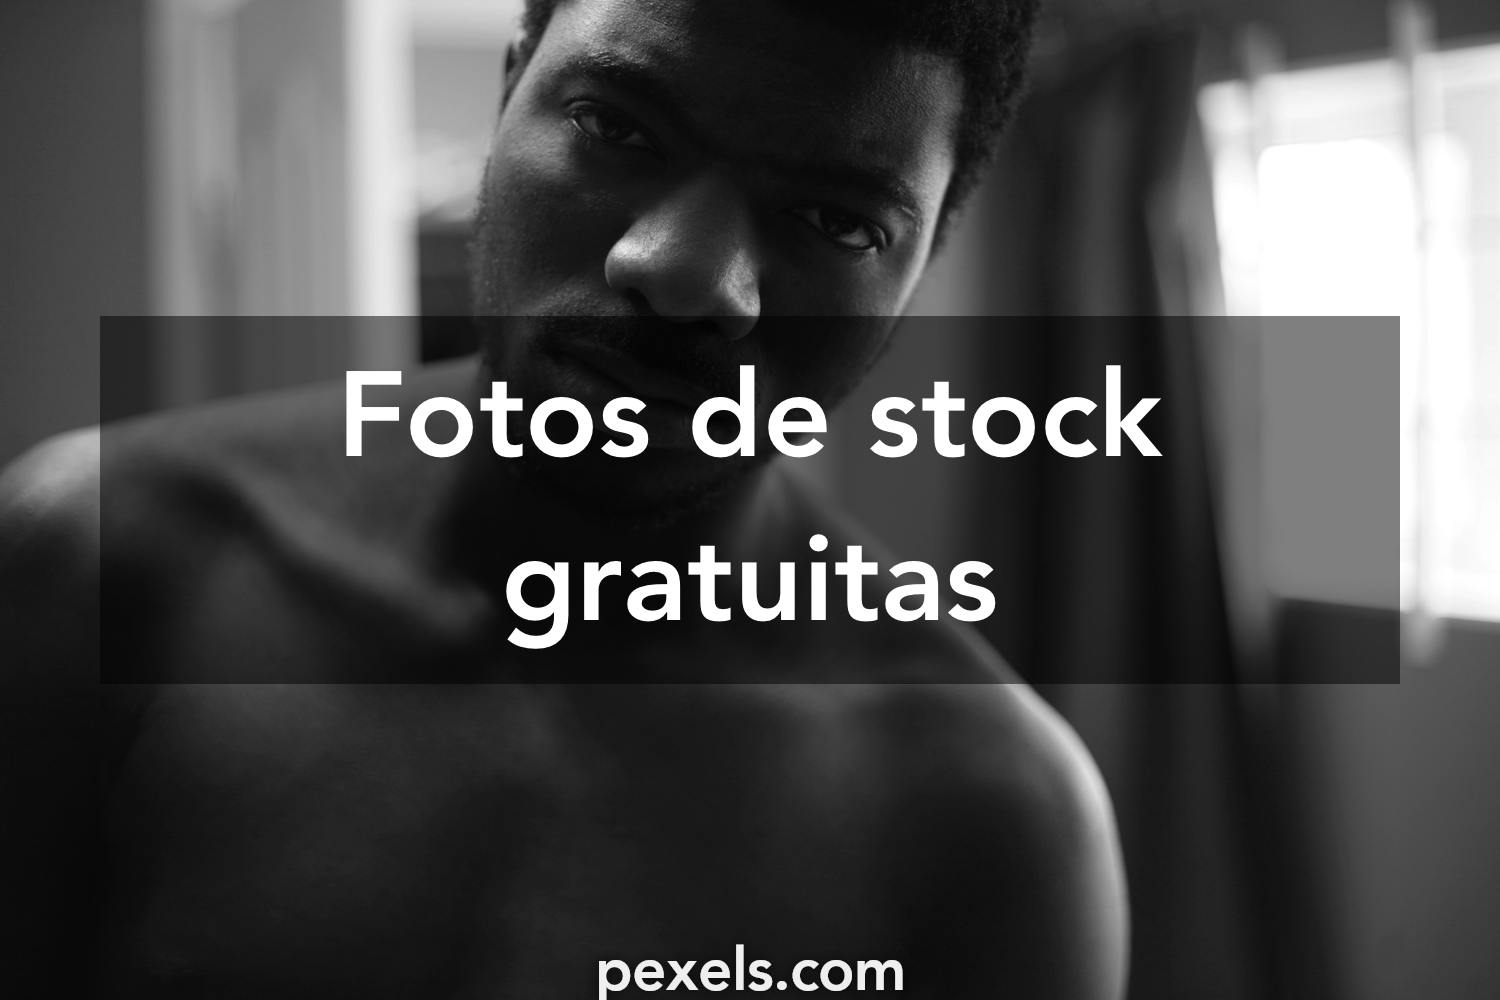 1,005,622 Fotos de Stock de Tristeza - Fotos de Stock Gratuitas e Sem  Fidelização a partir da Dreamstime